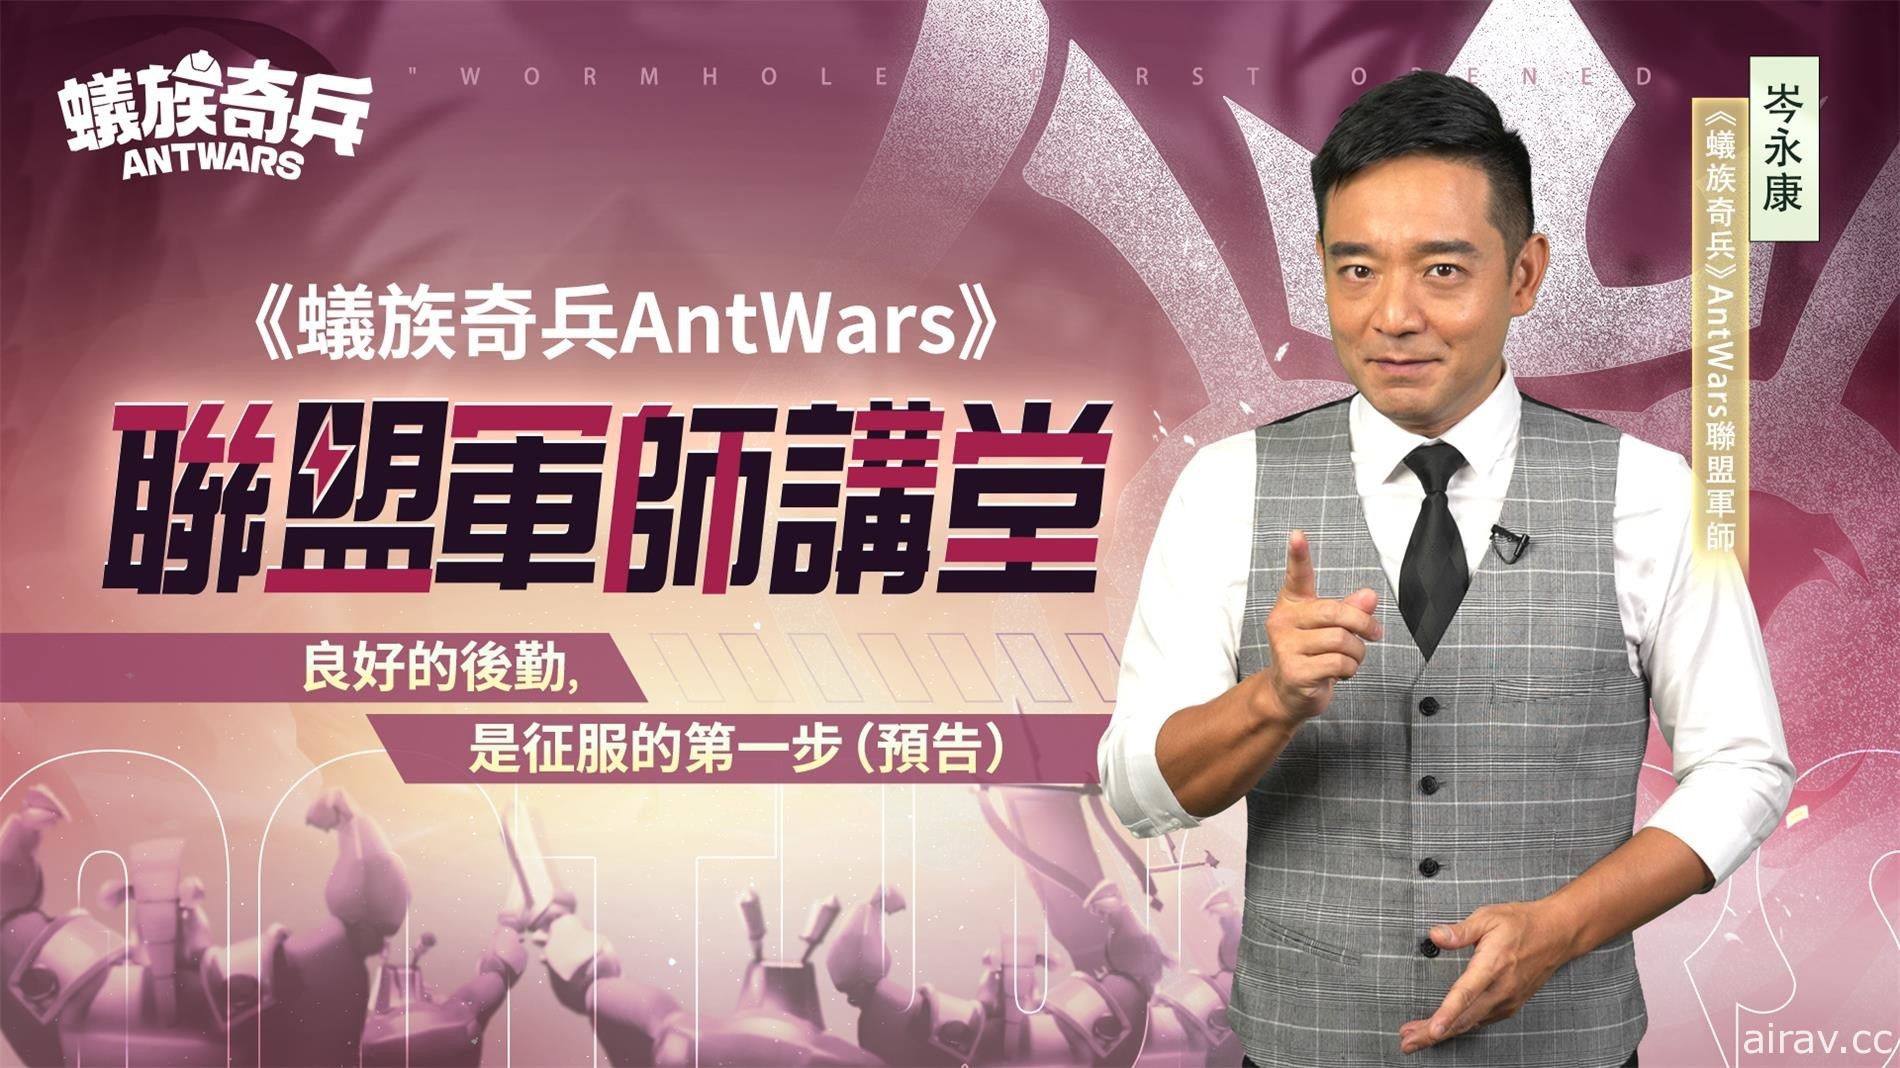 《蟻族奇兵 AntWars》宣佈 4/26 正式上線 公開「百萬大獎最強工蟻爭霸賽」活動